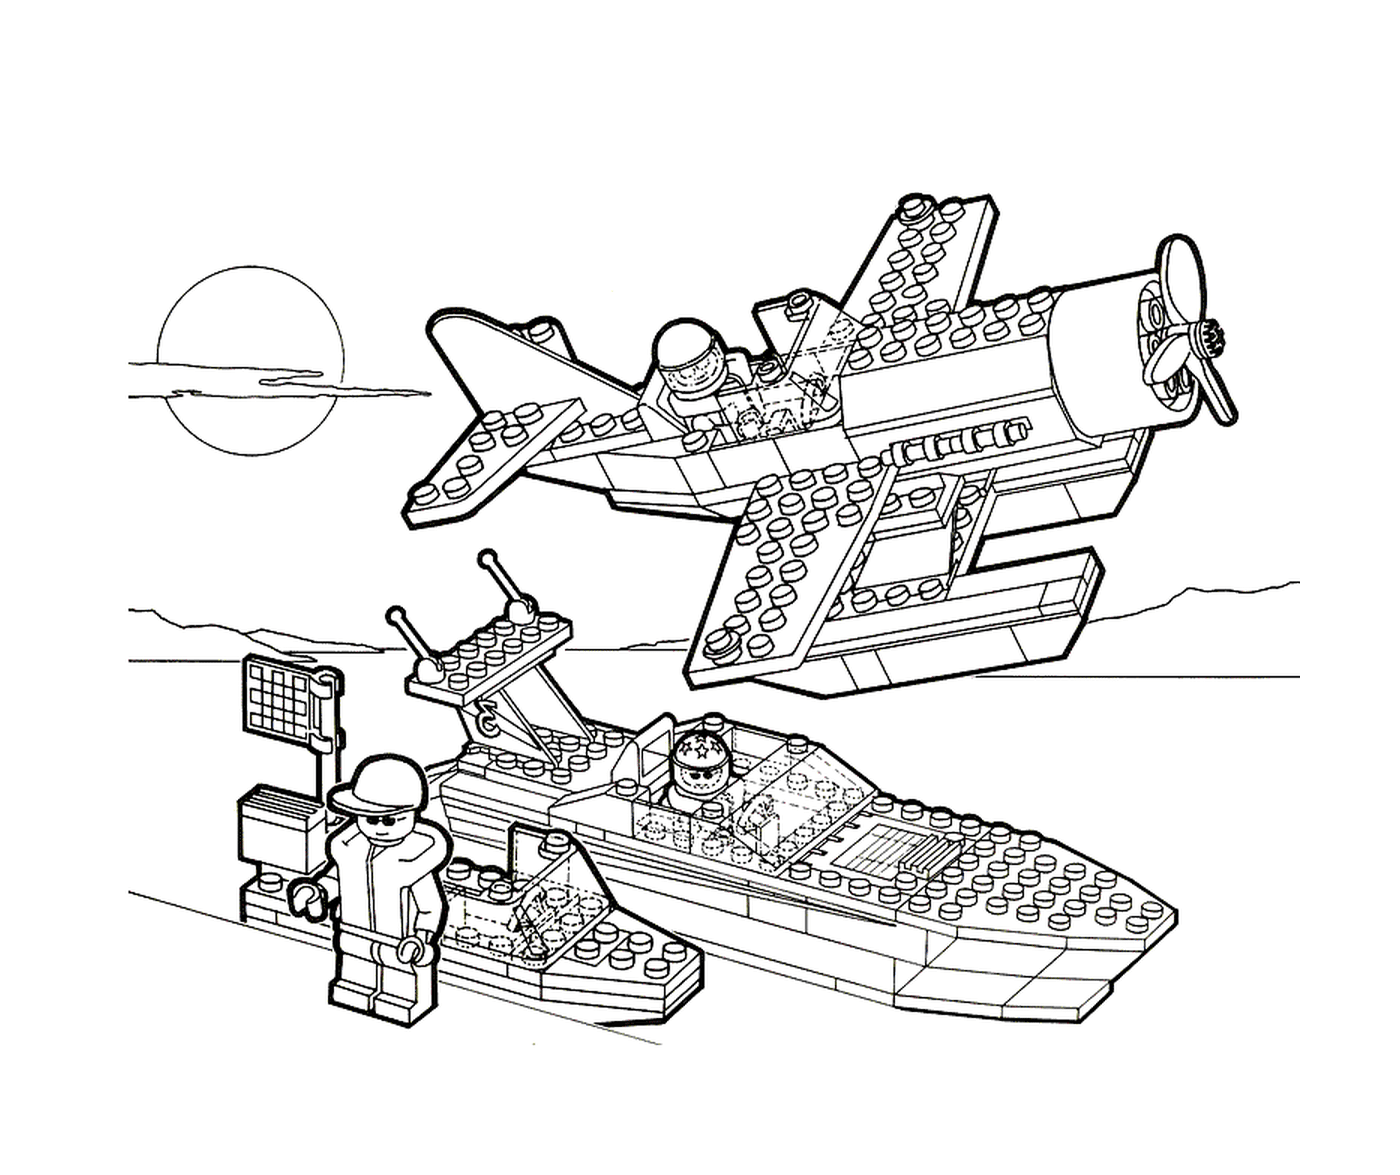  Самолеты и лодки < < Лего > > 